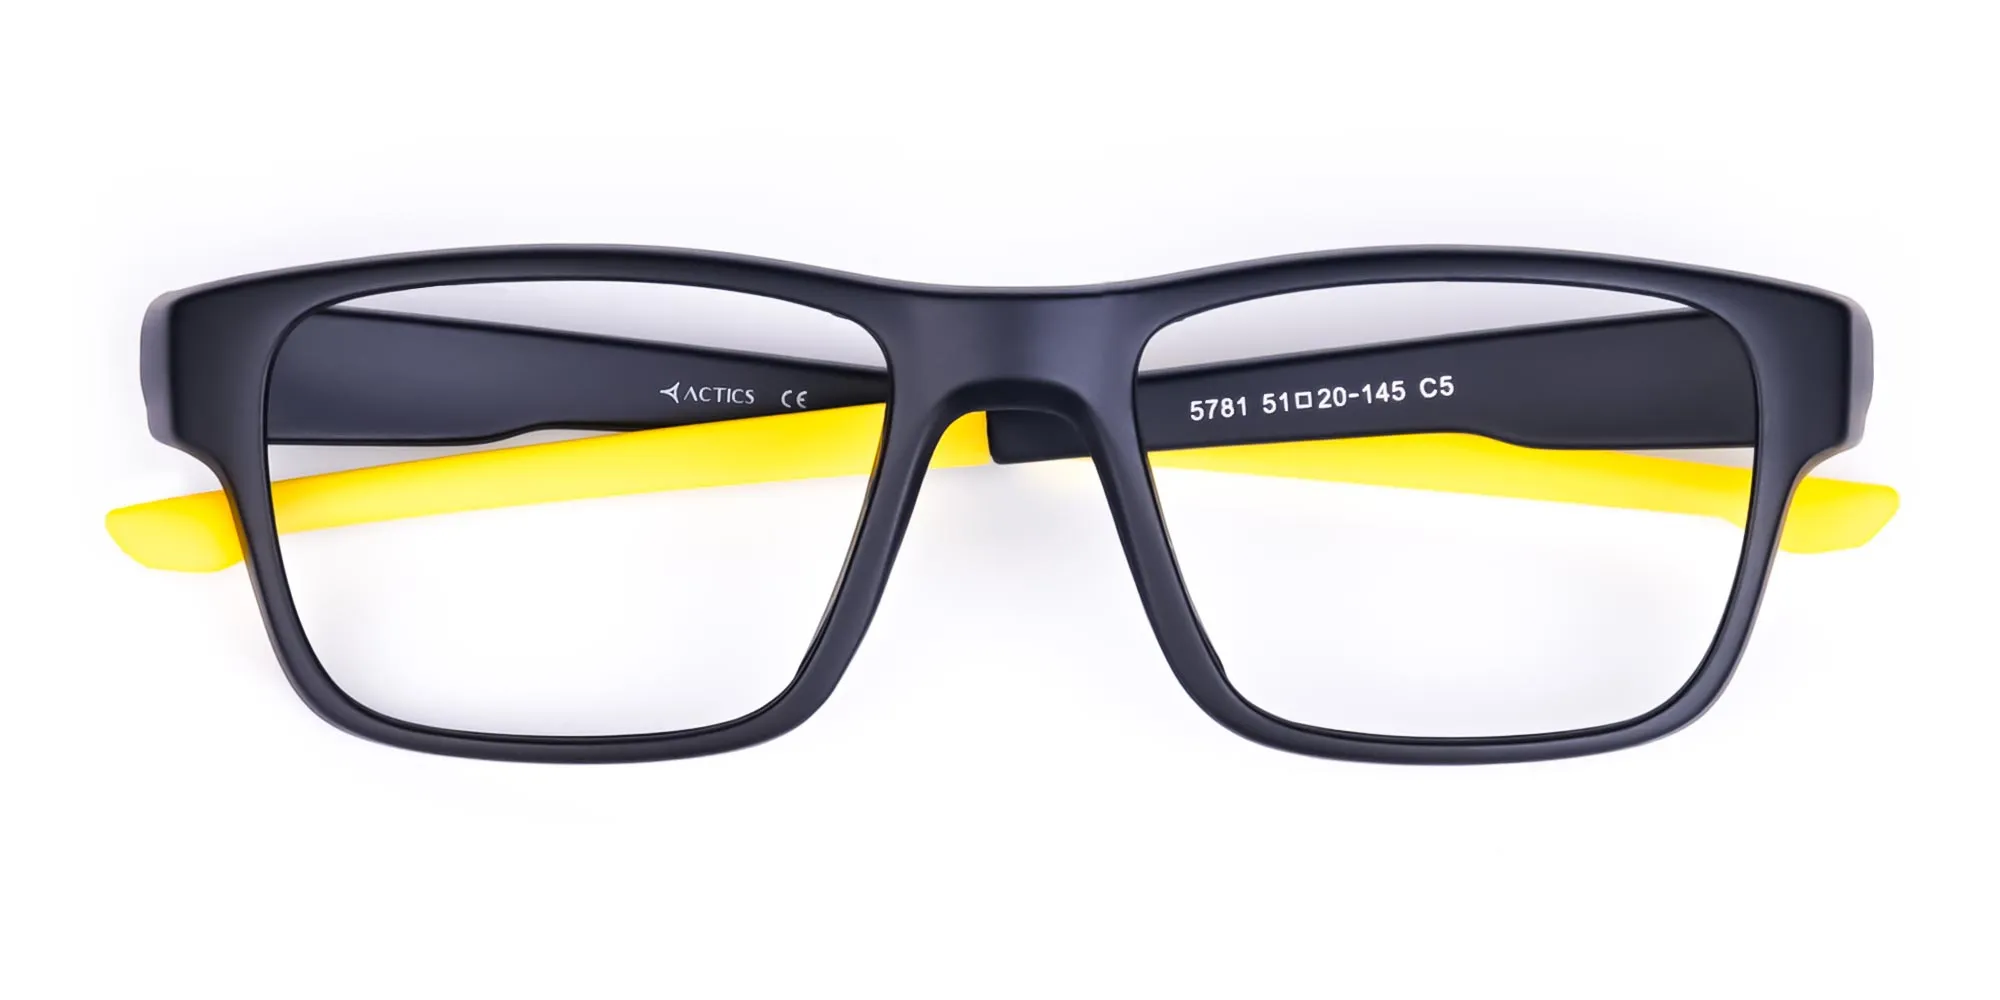 Bright Yellow and Black Rectangular Glasses-2